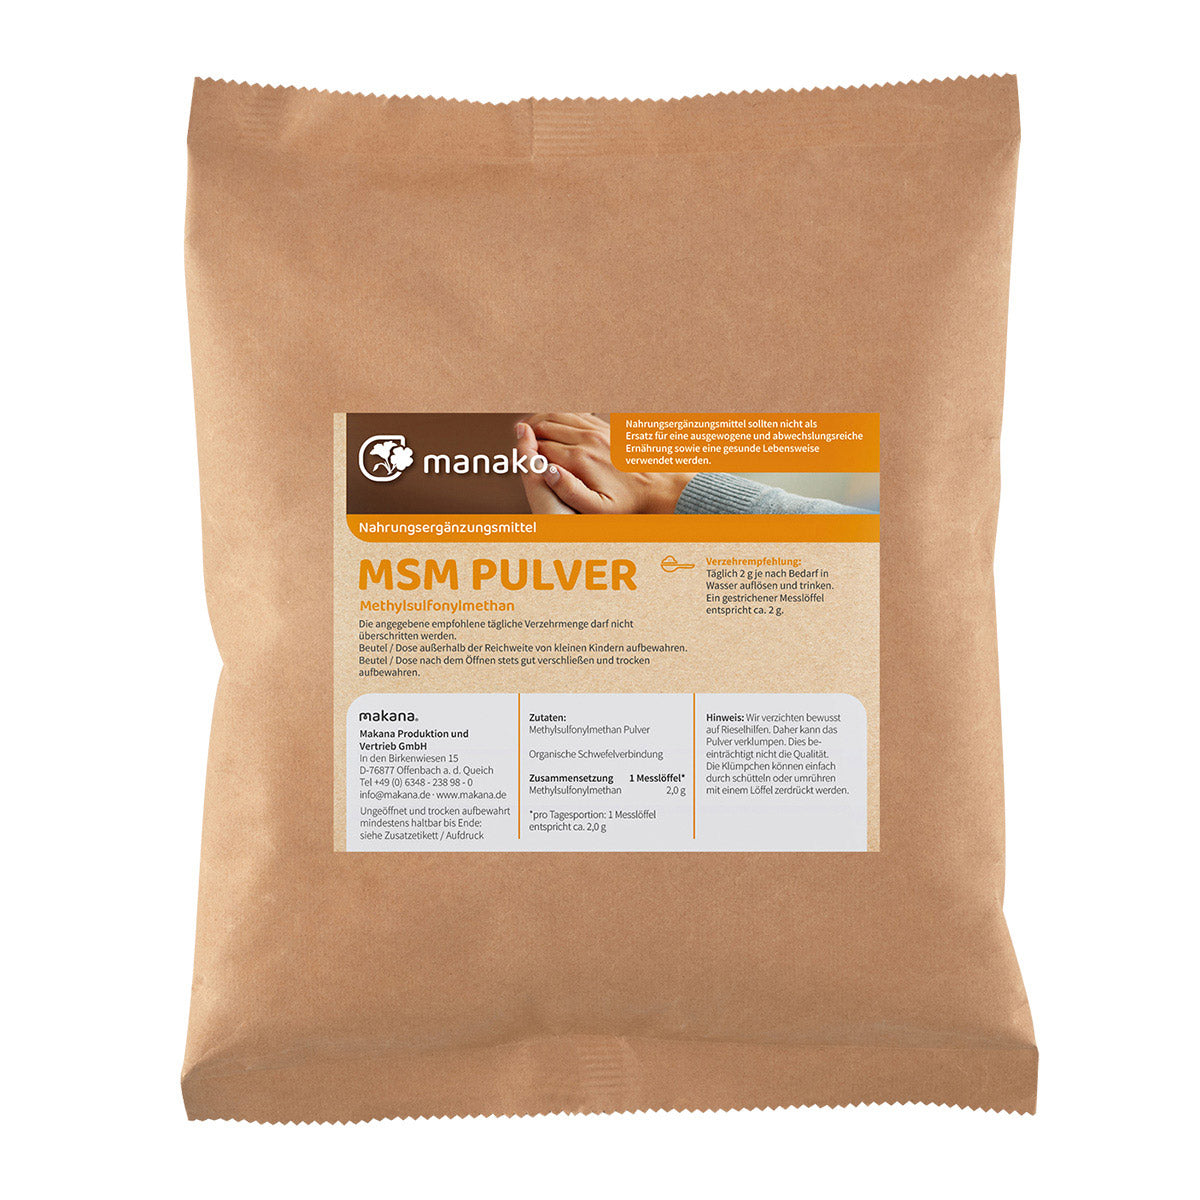 manako MSM - Methylsulfonylmethan -  kristallines Pulver, 99,9% rein, 1 kg Beutel